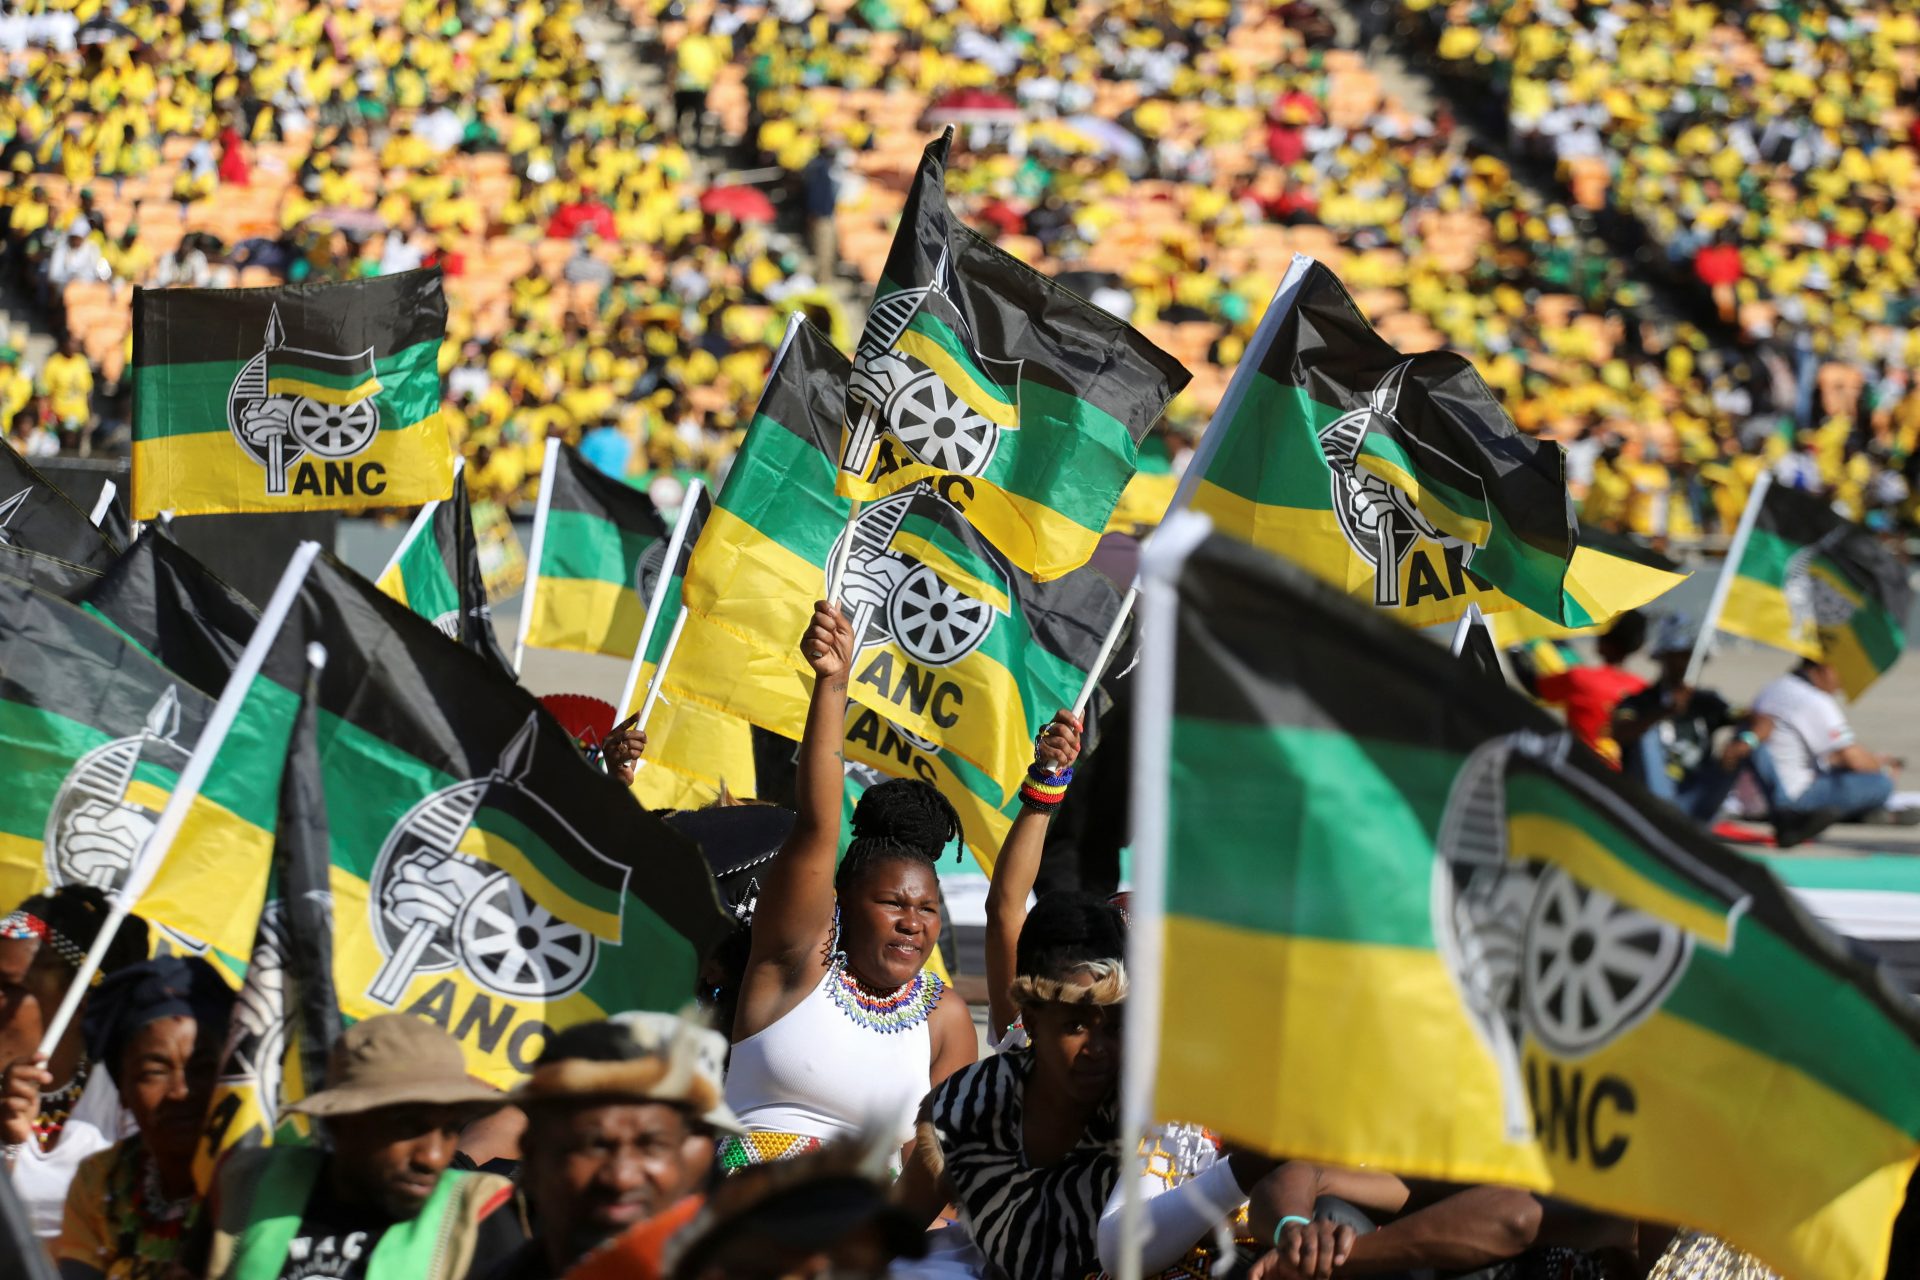 Victoire assurée de l'ANC aux élections sud-africaines malgré erreurs